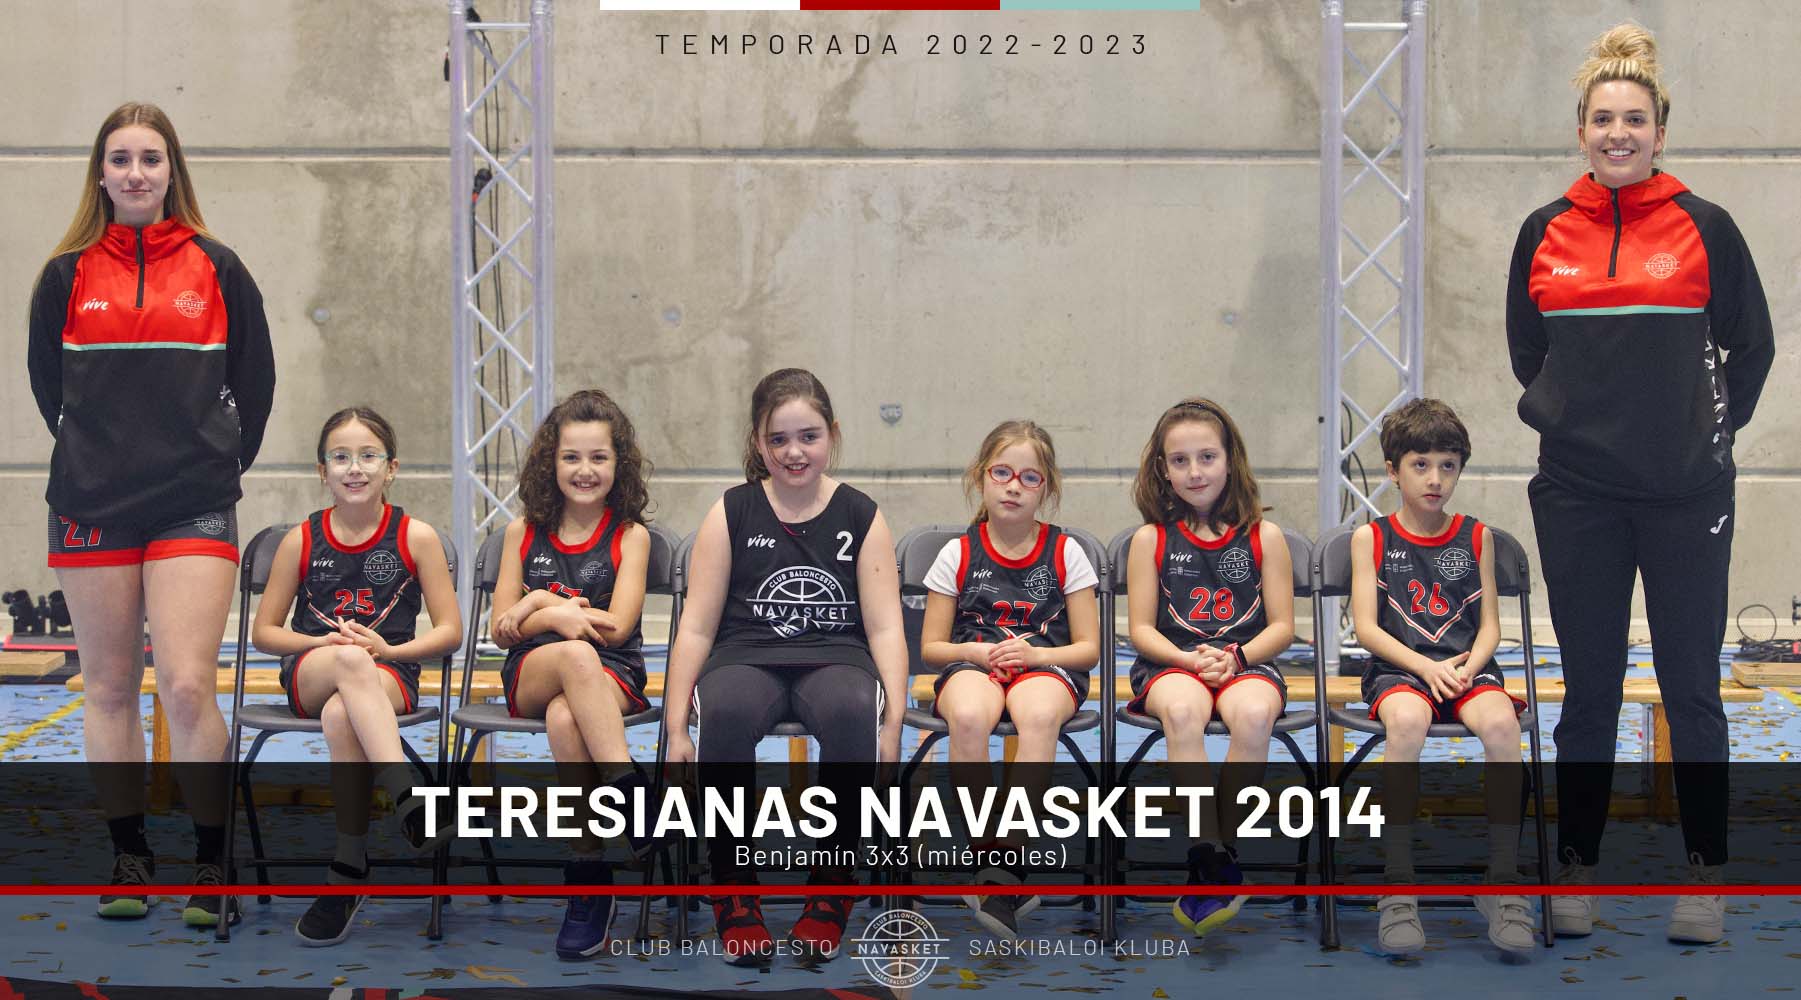 EQUIPOS NVT | Teresianas Navasket 2014 (2022-2023)